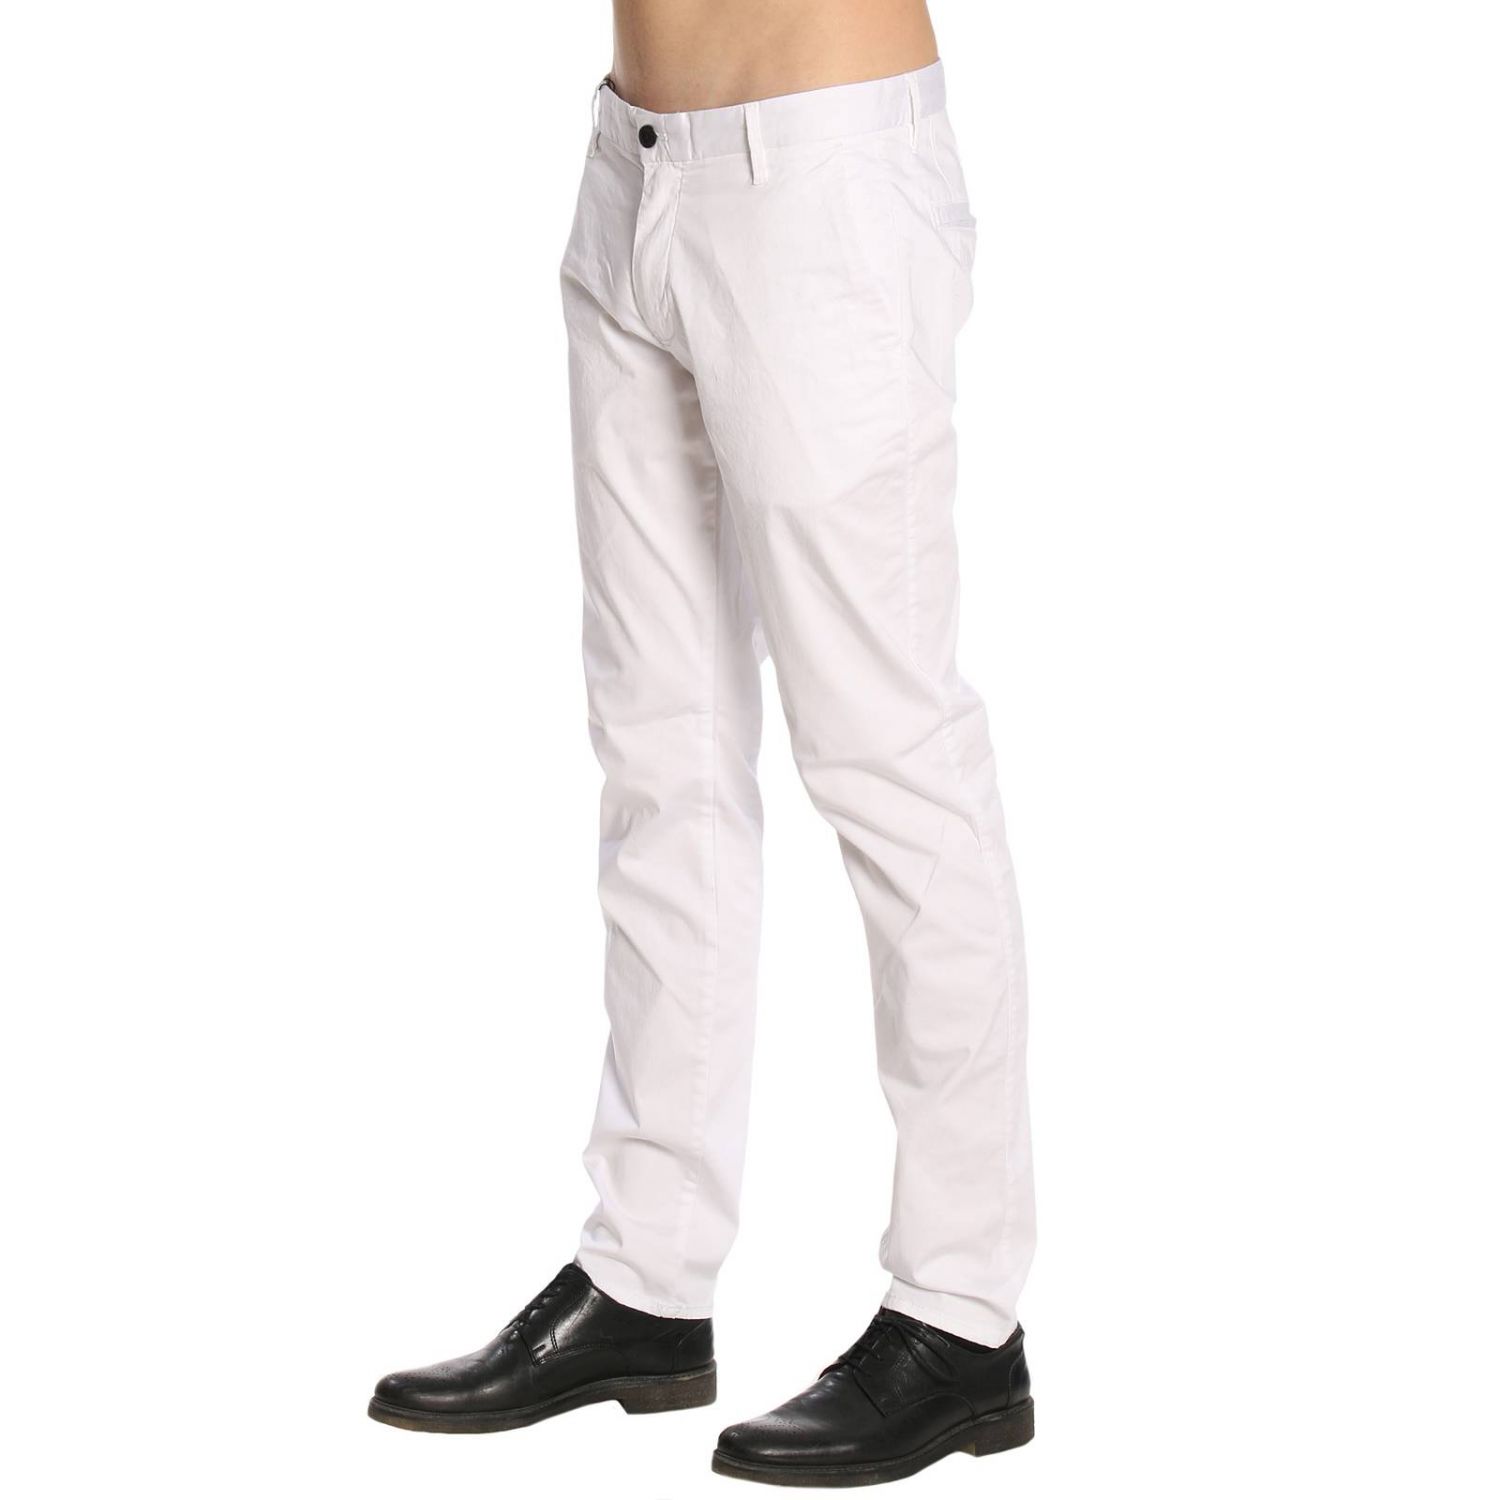 Emporio Armani Outlet: Pants men | Pants Emporio Armani Men White ...